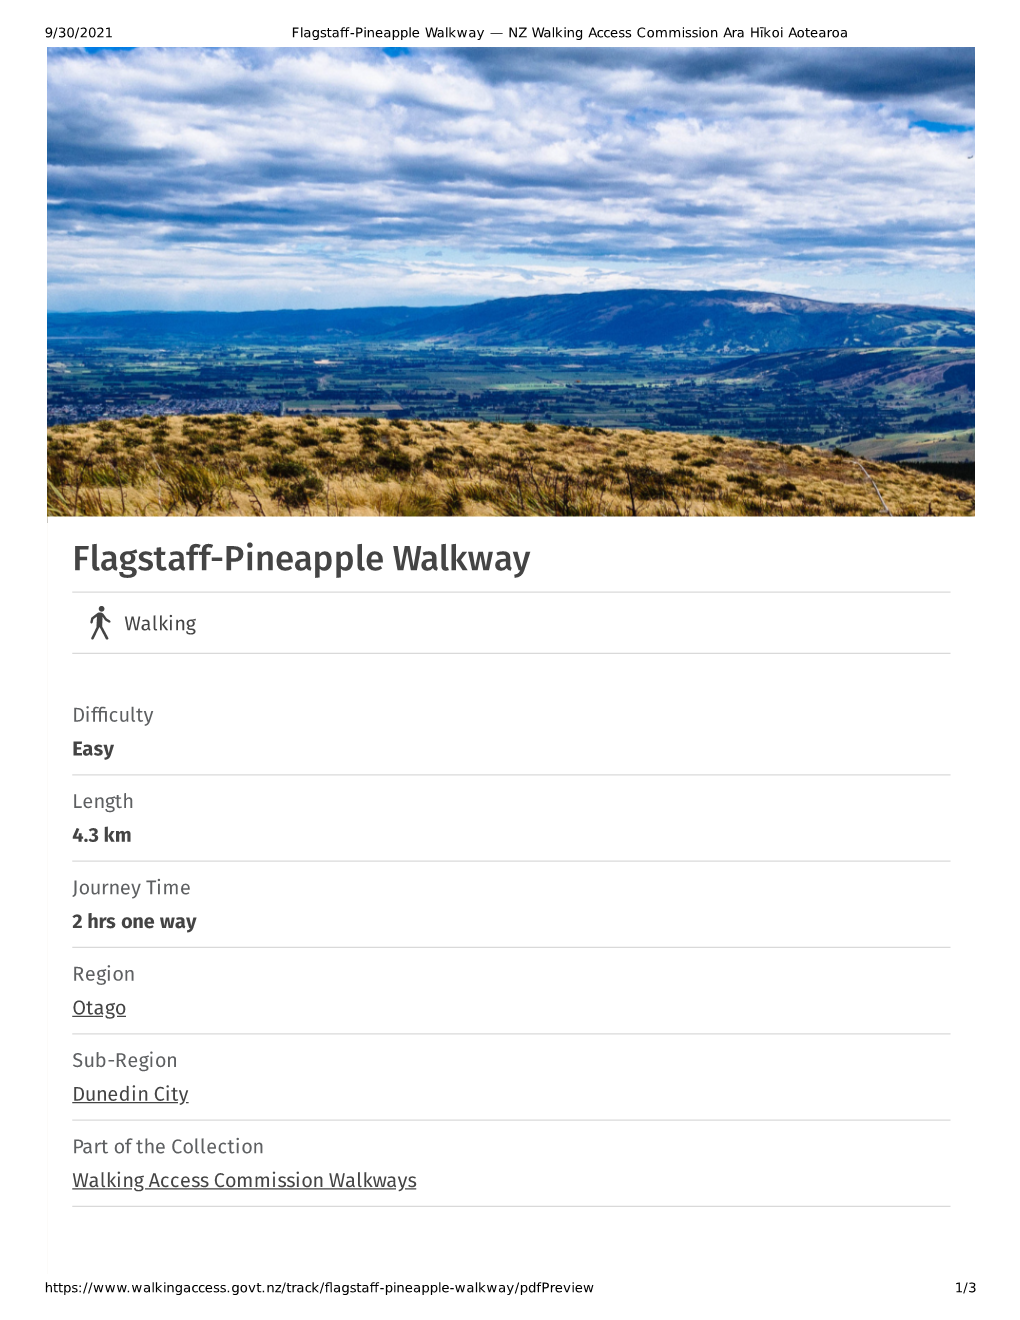 Flagstaff-Pineapple Walkway